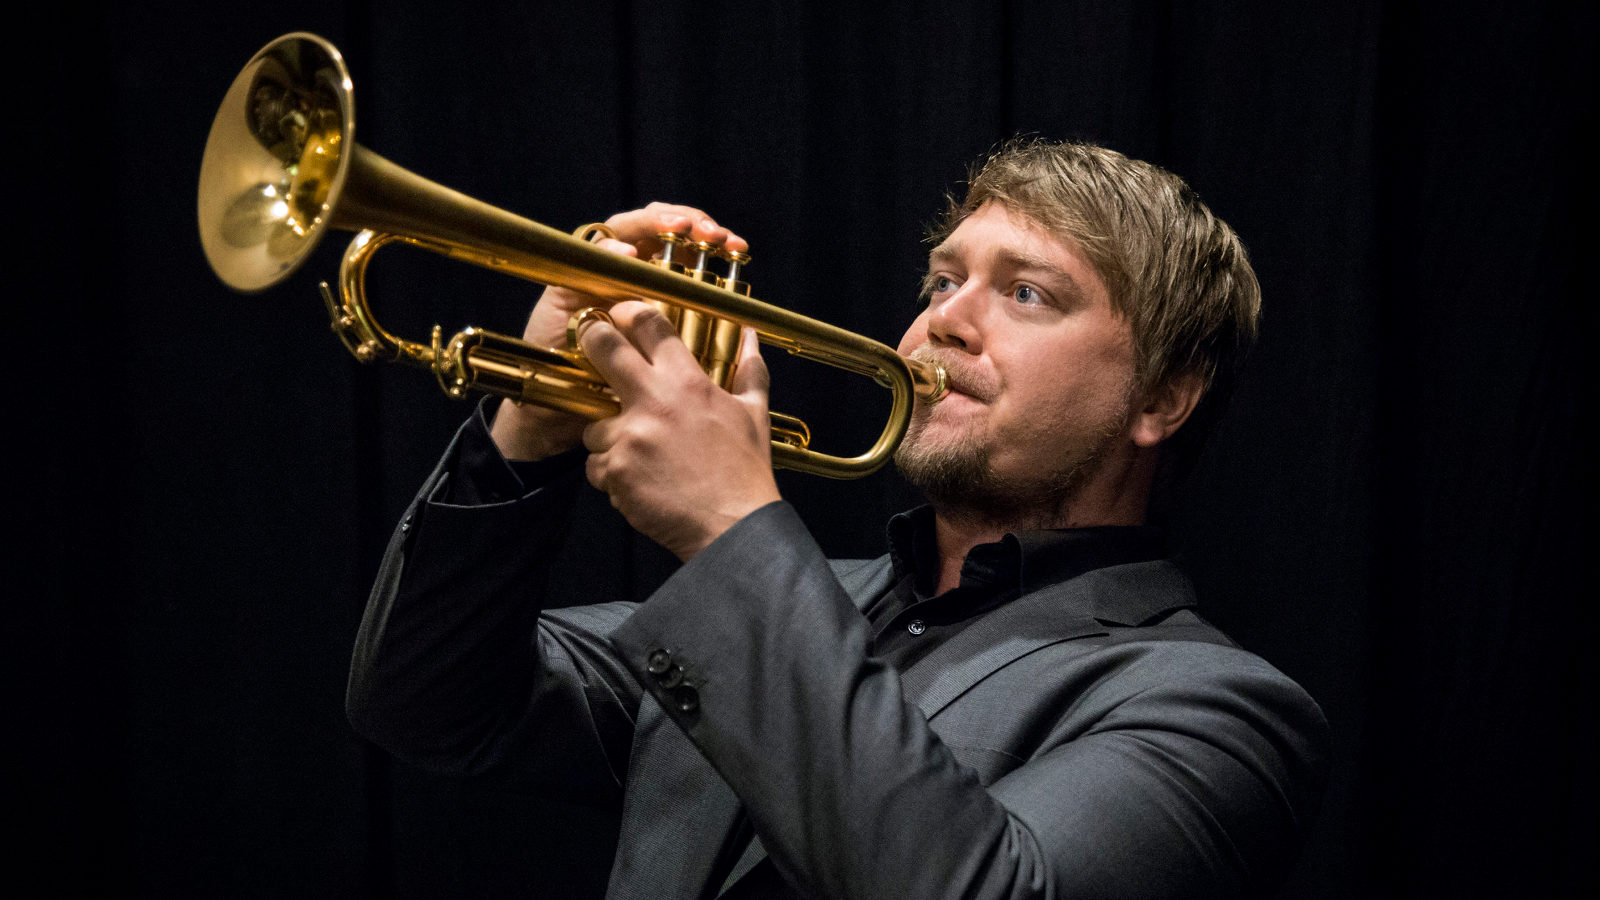 Kuvassa on Tero Lindberg soittamassa trumpettia.  Kuva on yläviistoon ja puolivartalokuva.